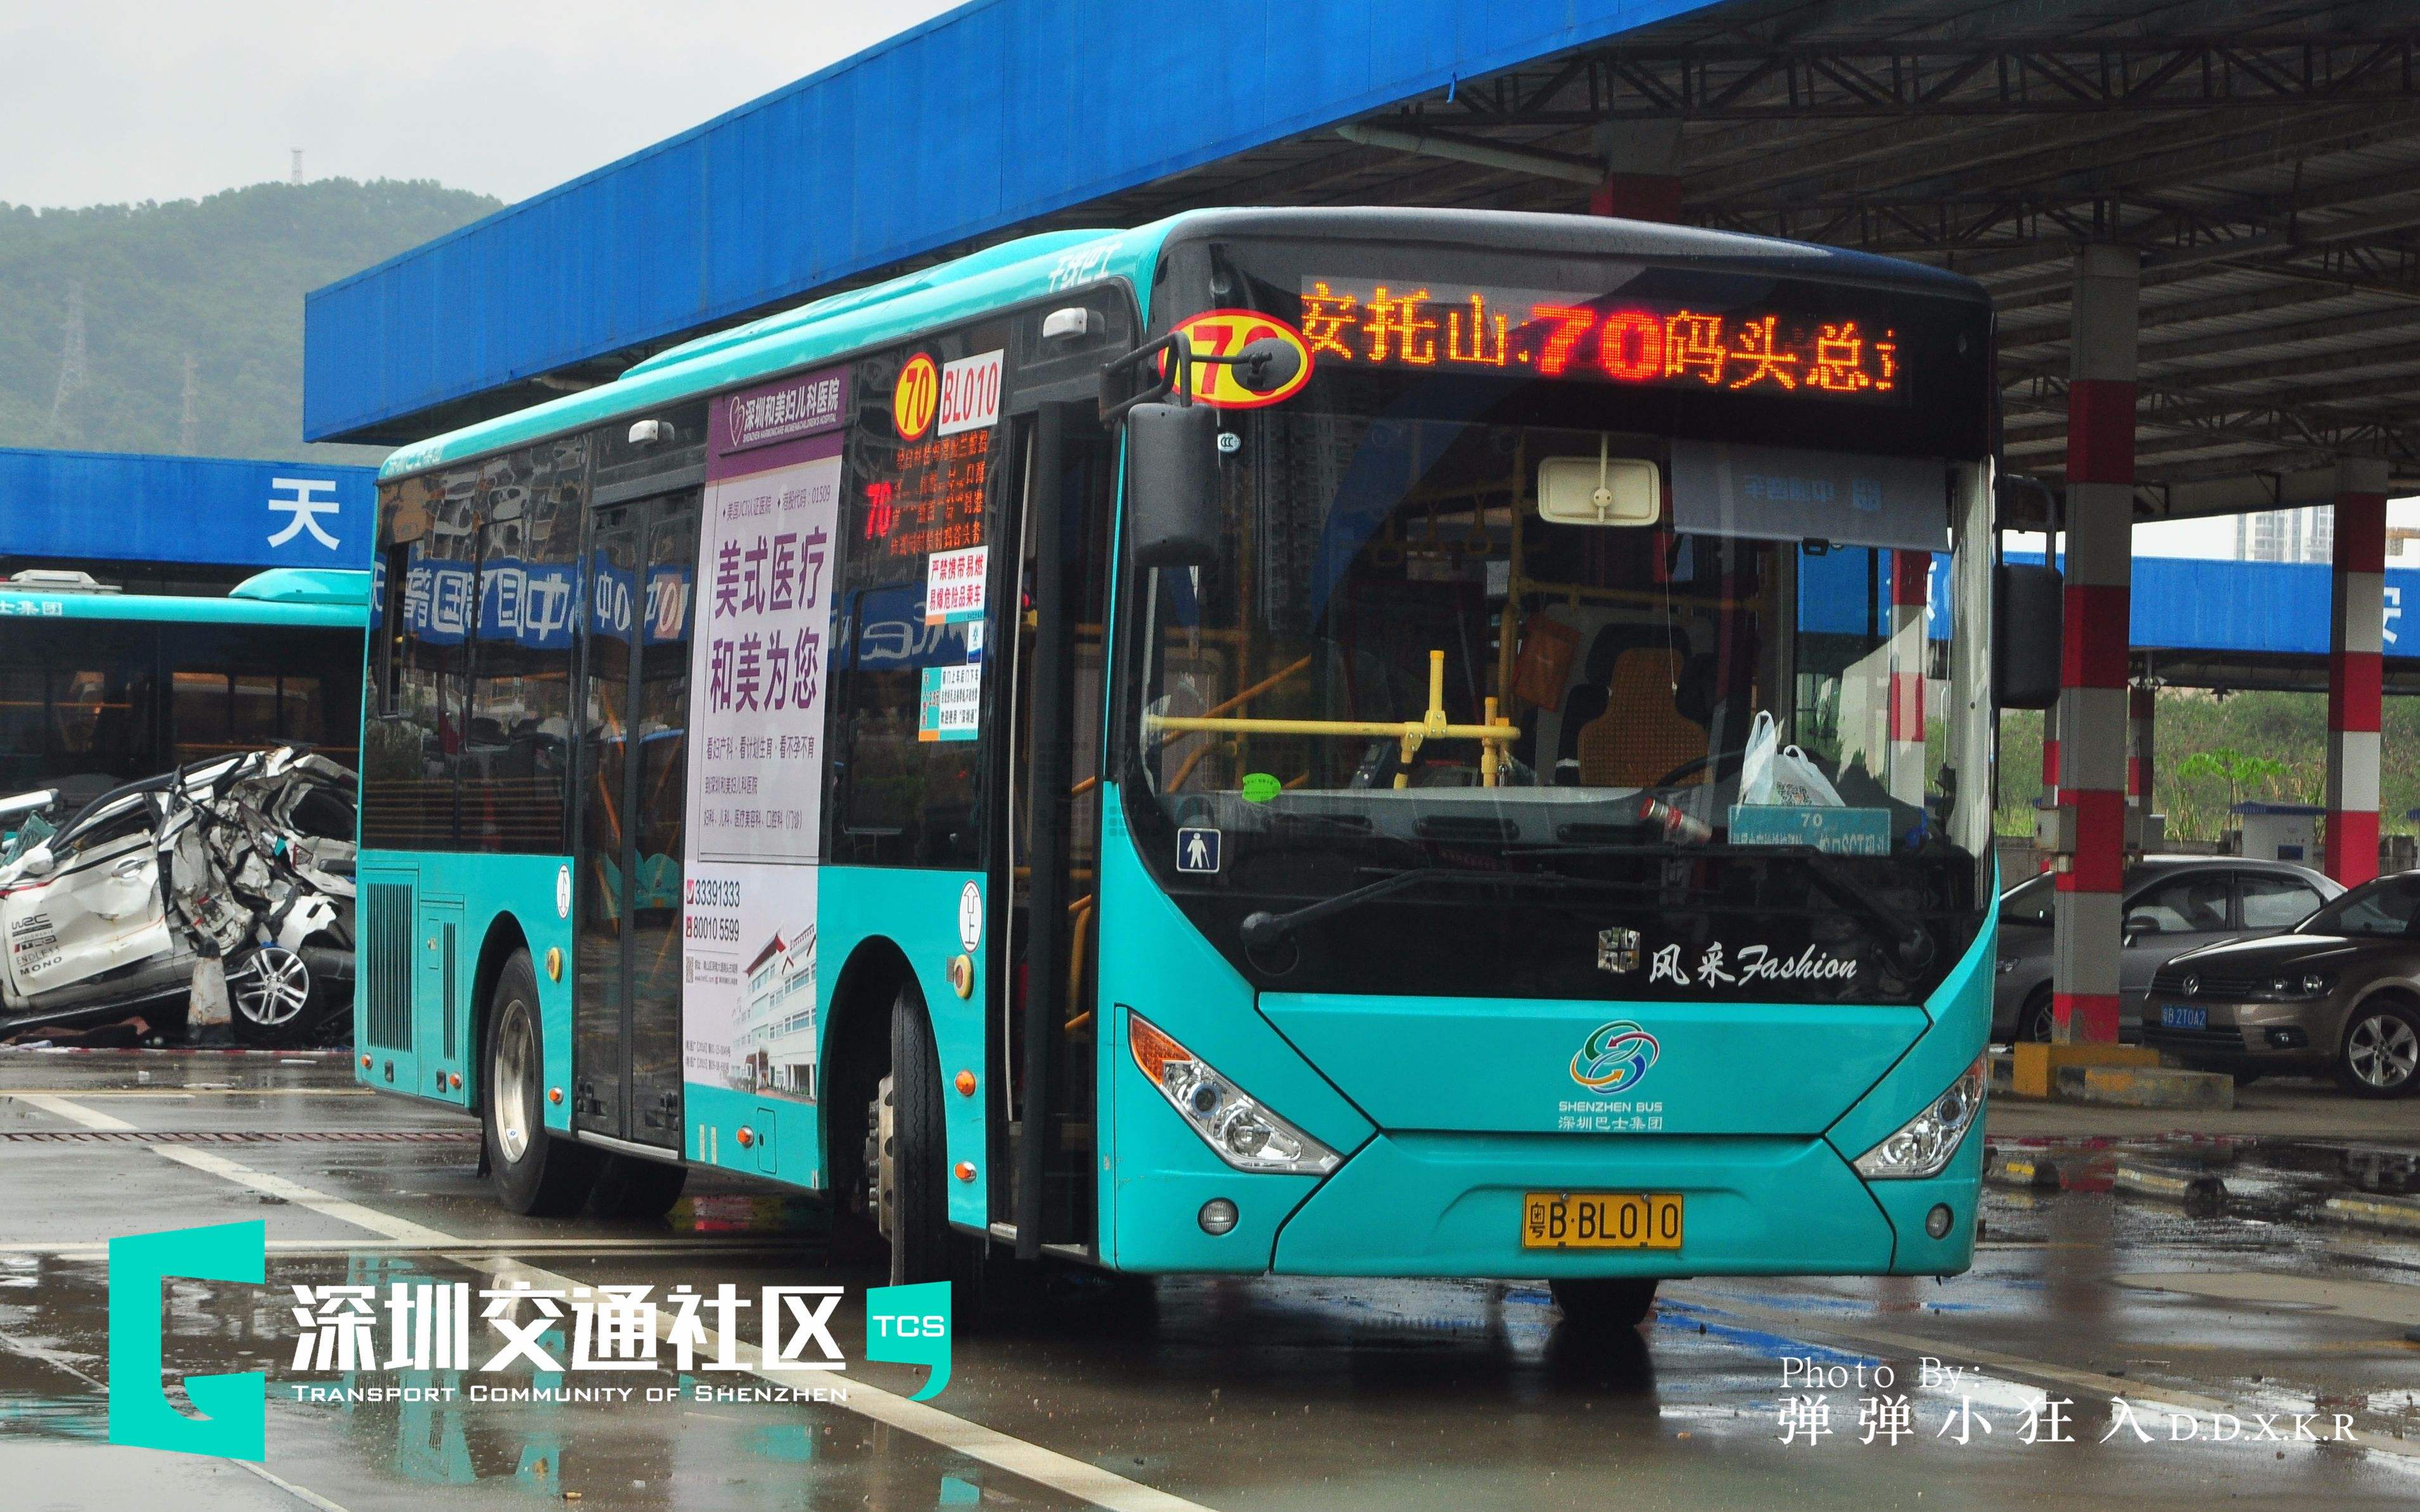 广安市公交车内广告、公交站台广告、公交车身广告介绍、广安公交车身广告投放优势分析